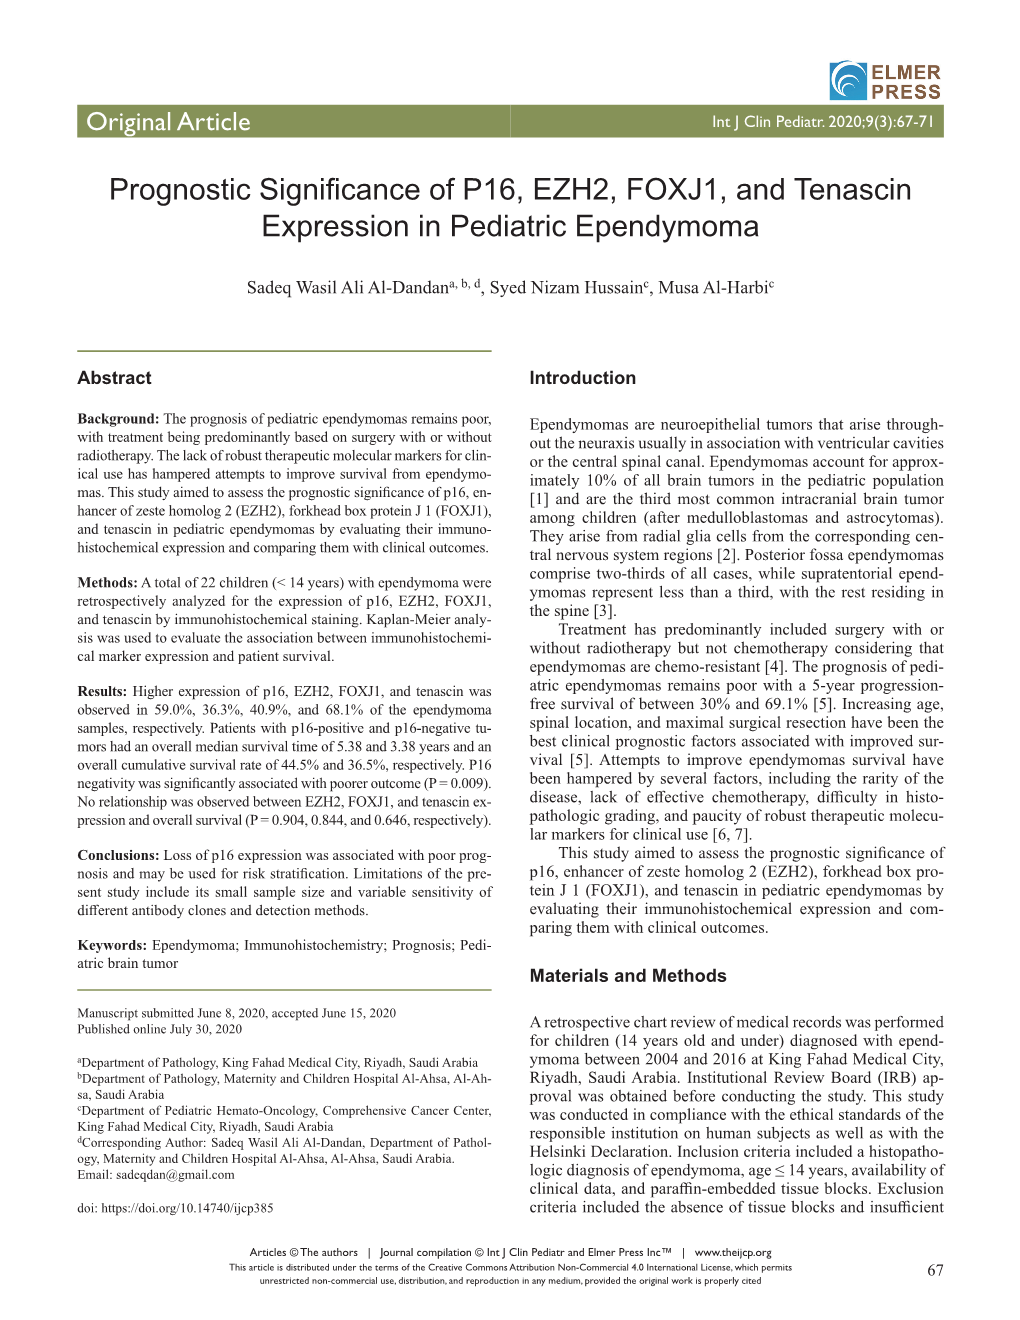 Prognostic Significance of P16, EZH2, FOXJ1, and Tenascin Expression in Pediatric Ependymoma